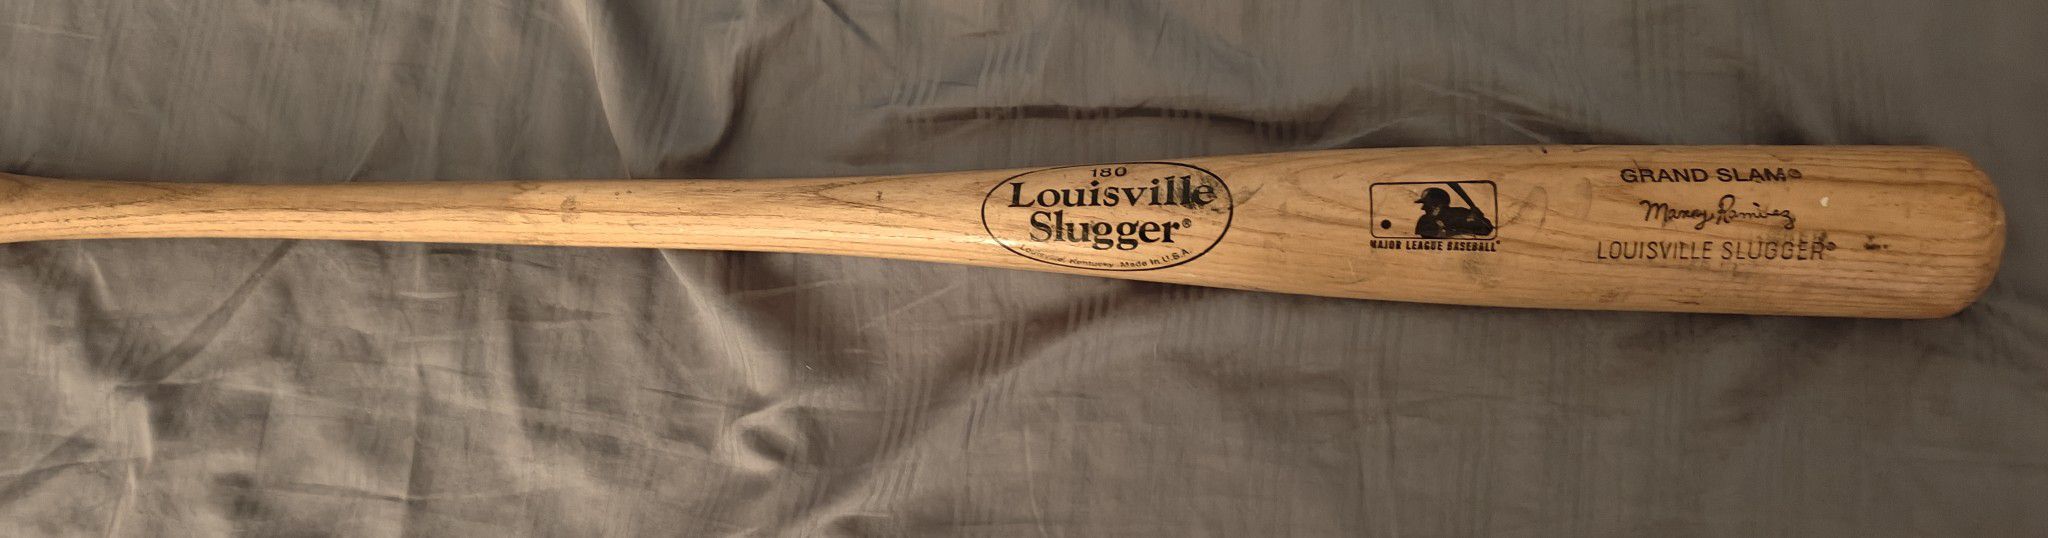 Manny Ramirez MLB Louisville slugger vintage authentic baseball bat